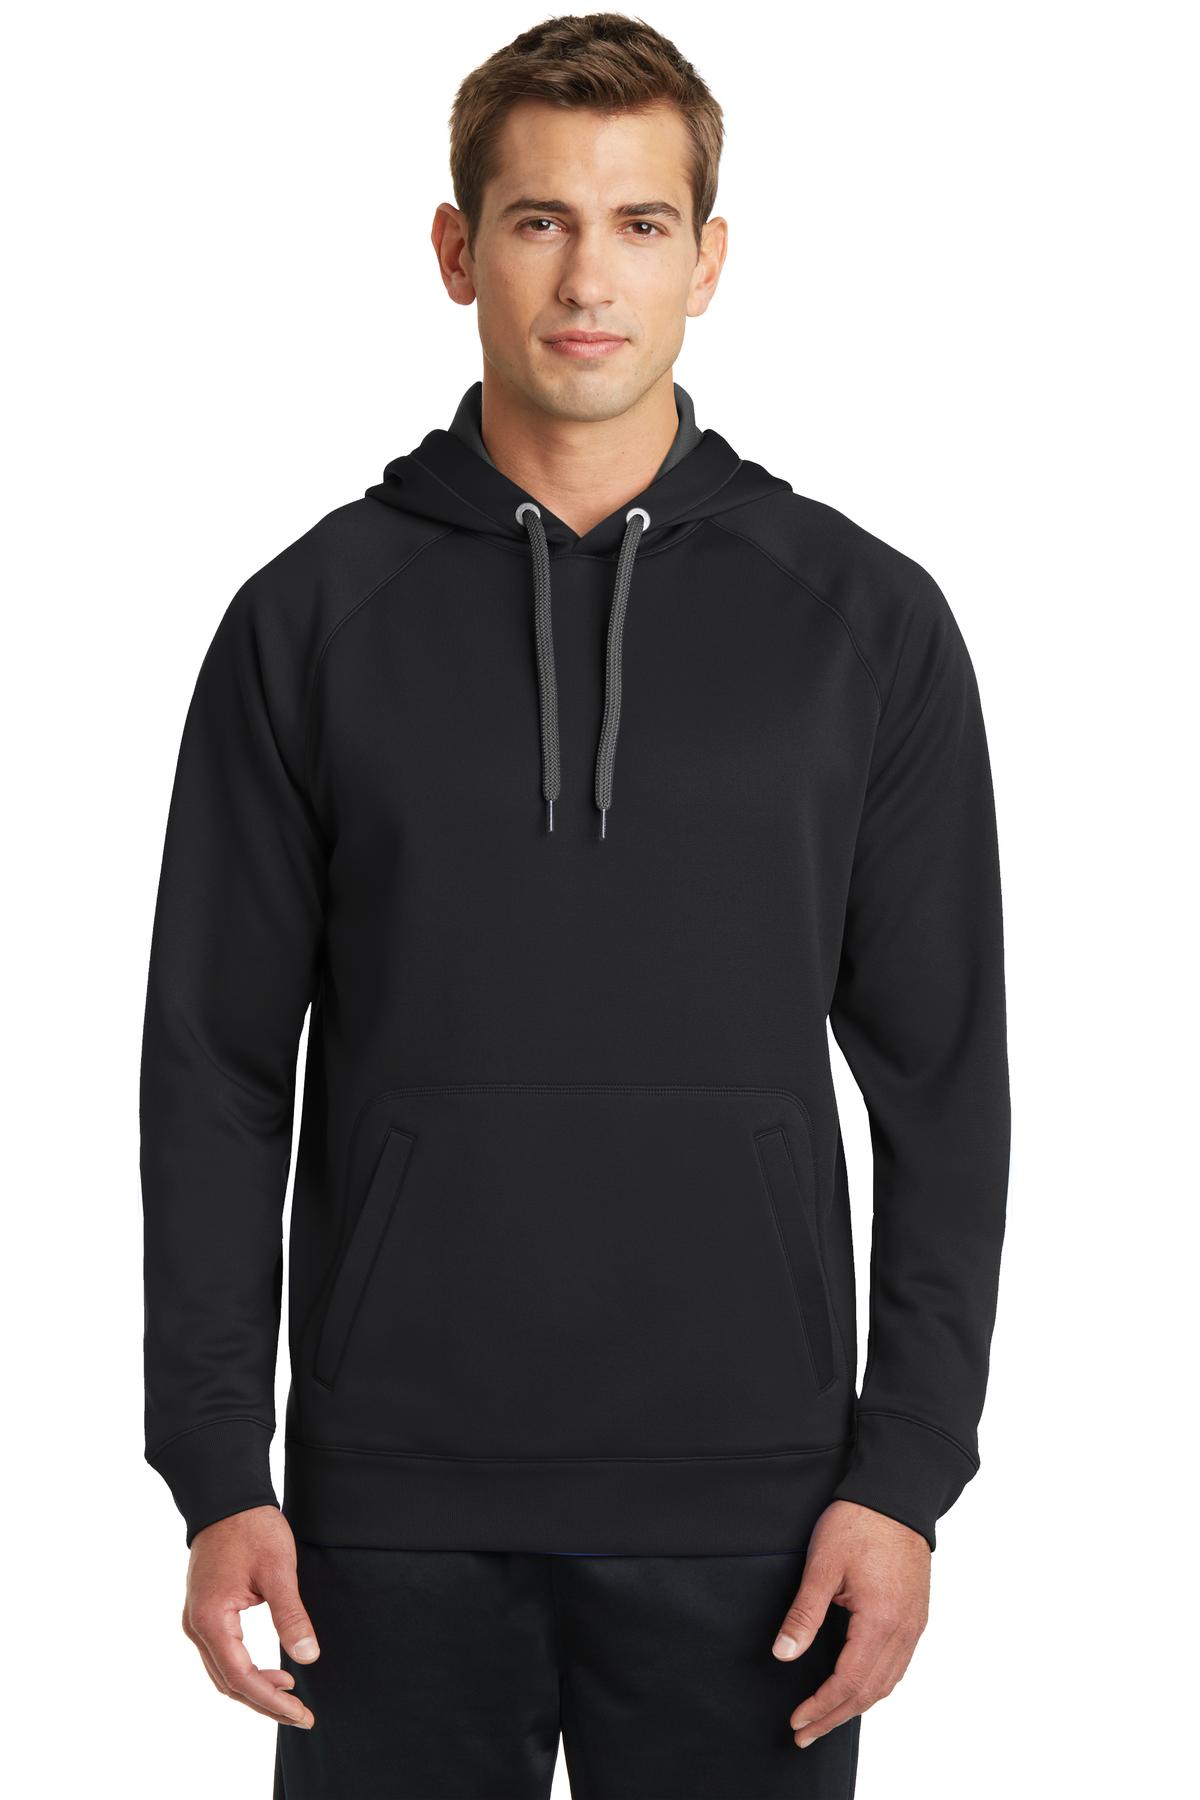 Sport-Tek Hospitality Sweatshirts & Fleece ® Tech Fleece Hooded Sweatshirt.-Sport-Tek